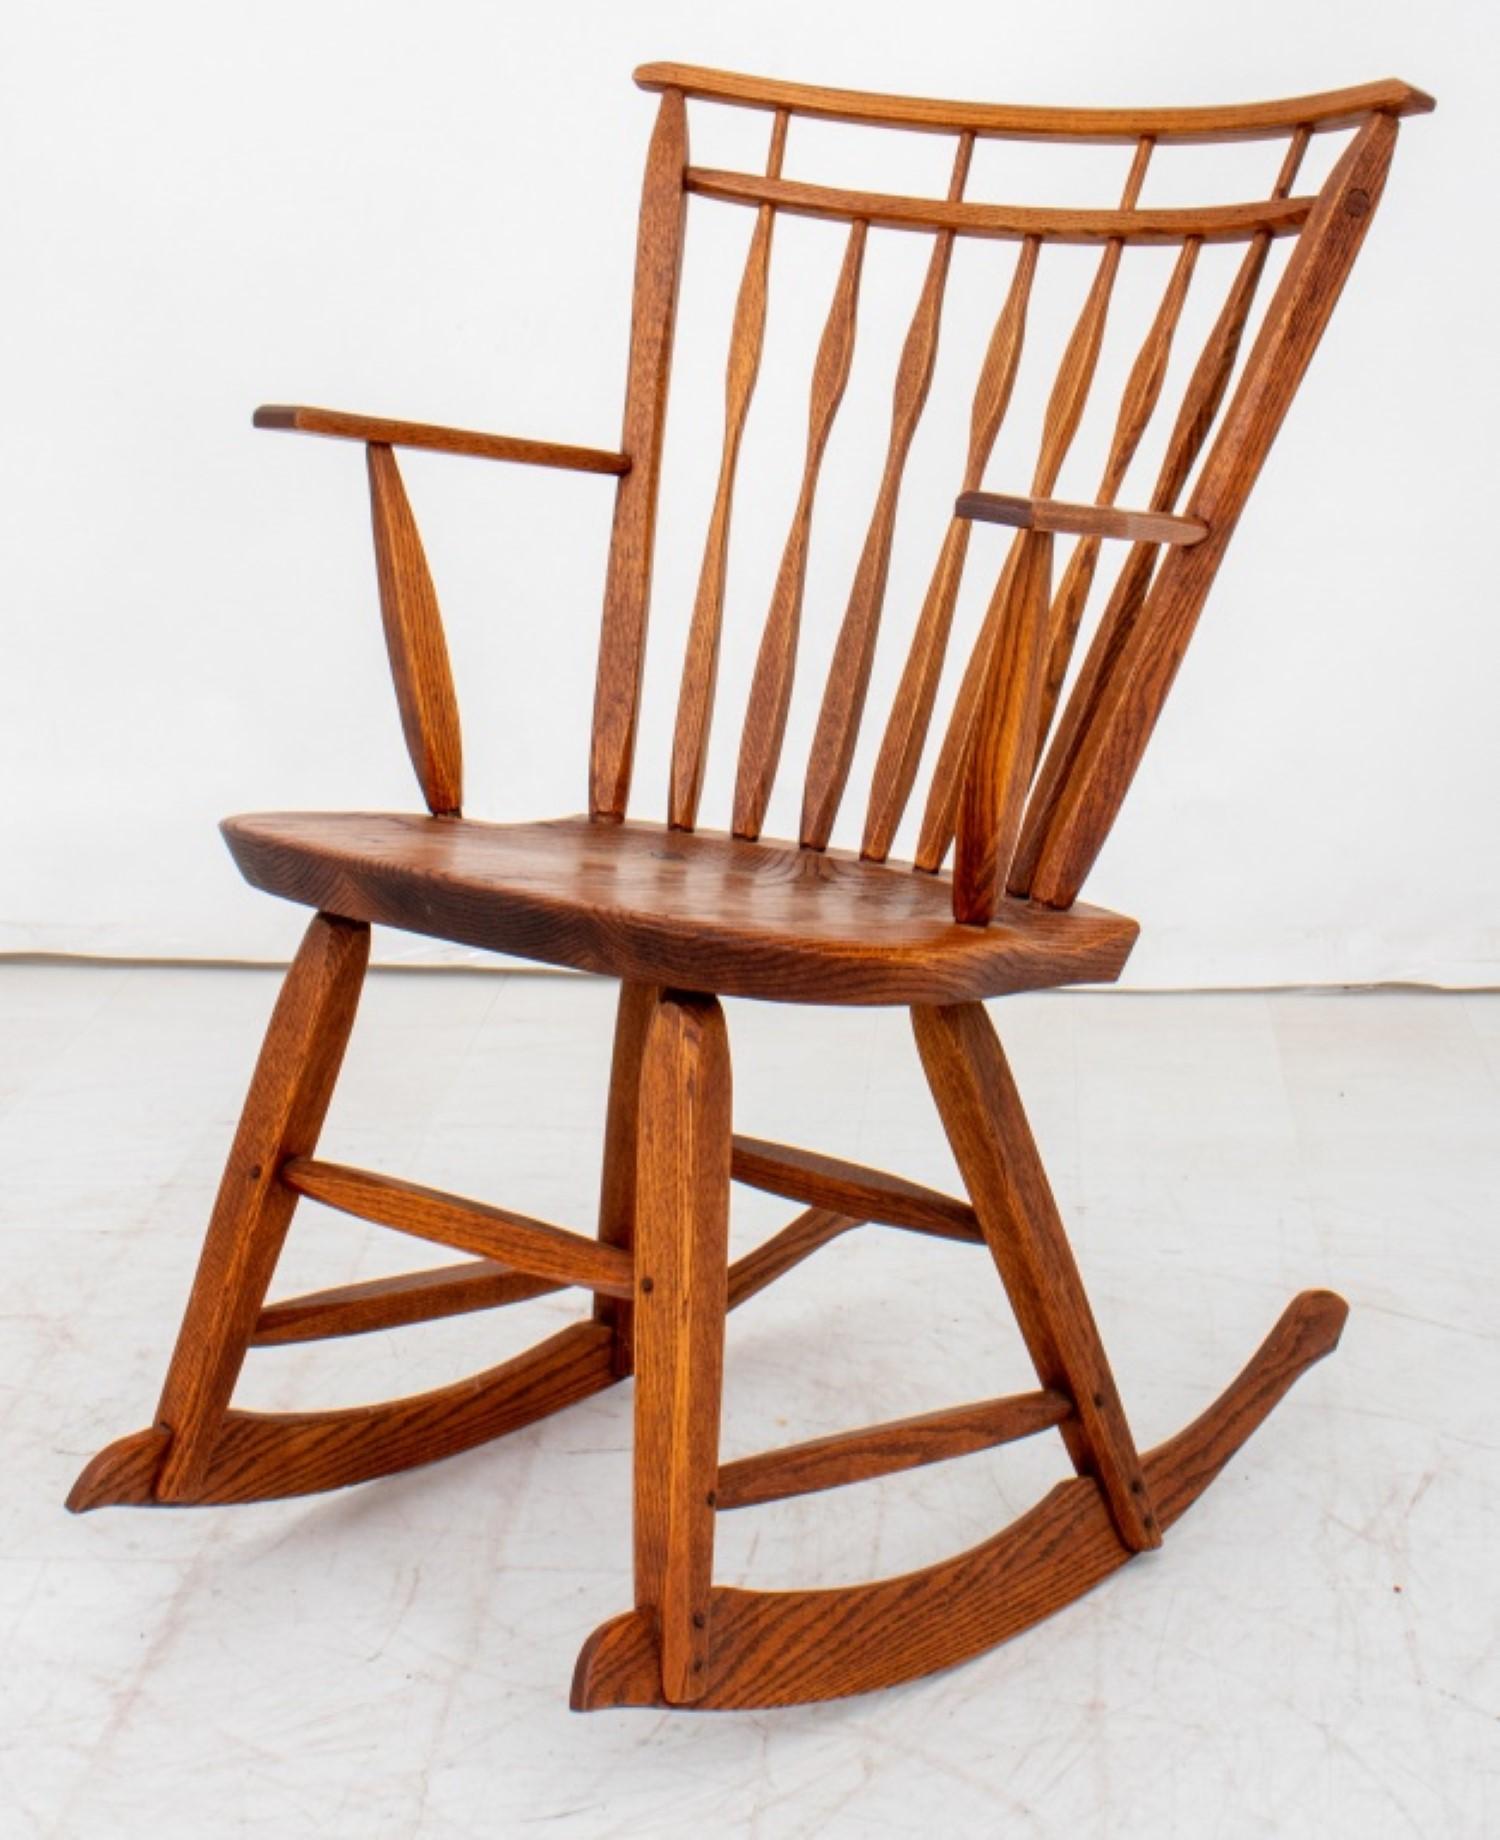 Construction robuste en chêne : Le chêne est un choix populaire pour les fauteuils à bascule en raison de sa solidité et de sa durabilité. Imaginez les tons chauds et les veinures naturelles du bois, ajoutant une touche de charme rustique à votre